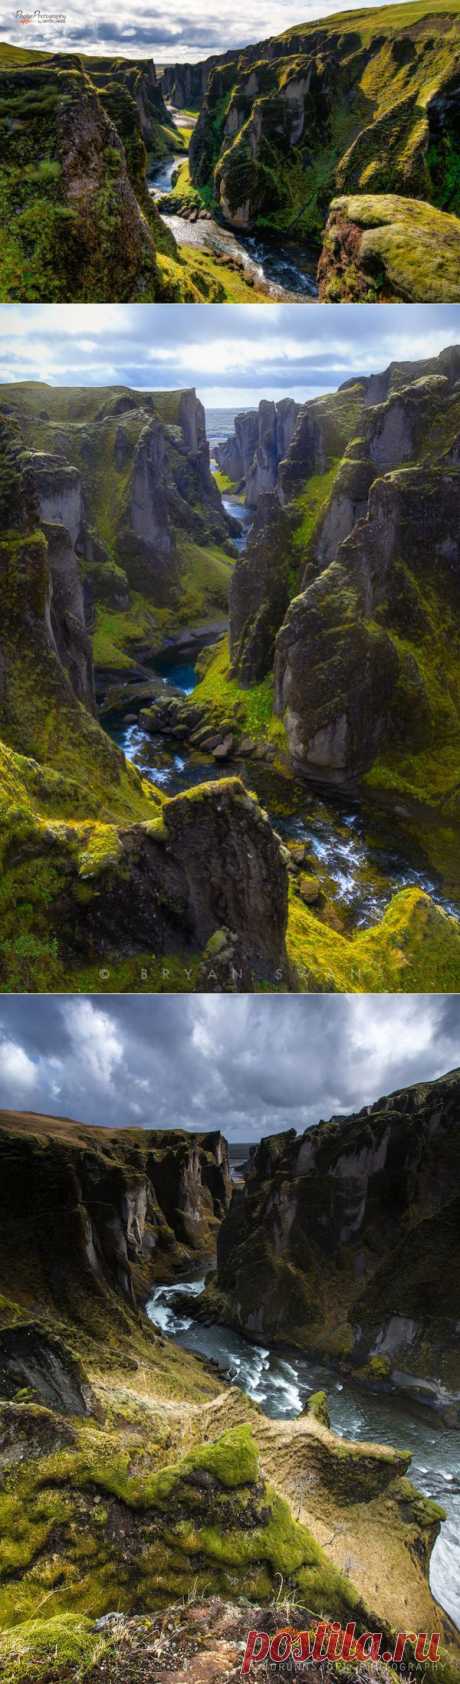 Красивейший каньон Исландии Фьядрарглуфюр.